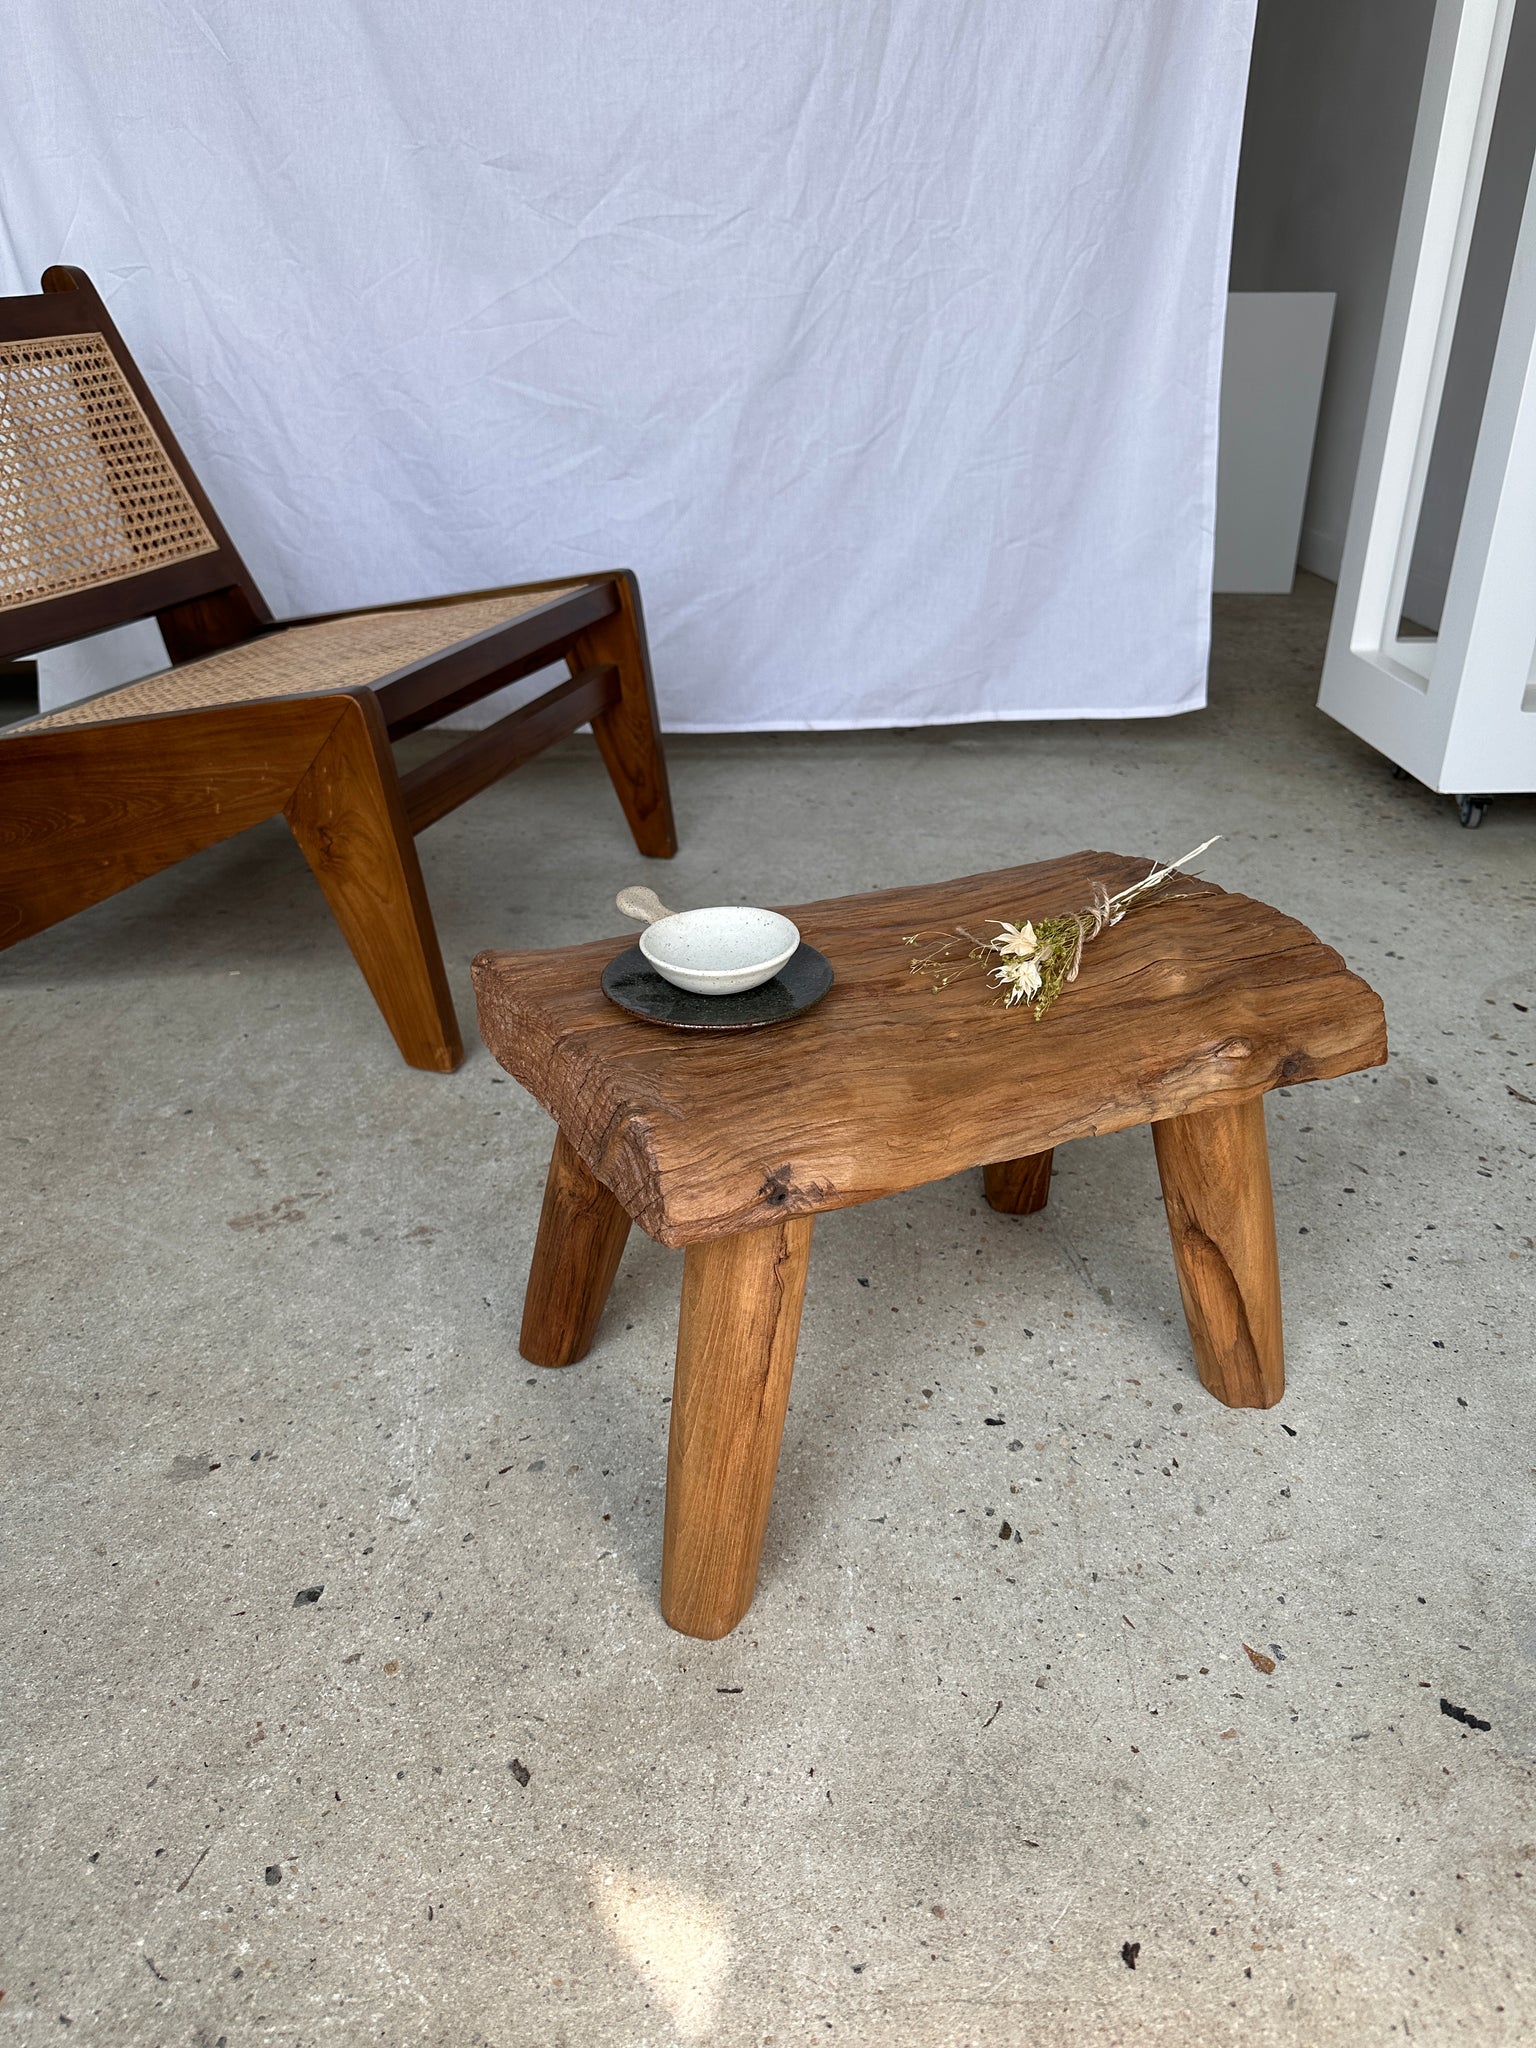 Petite table d'appoint ou tabouret en teck blond quadripode H:30 L43 l27